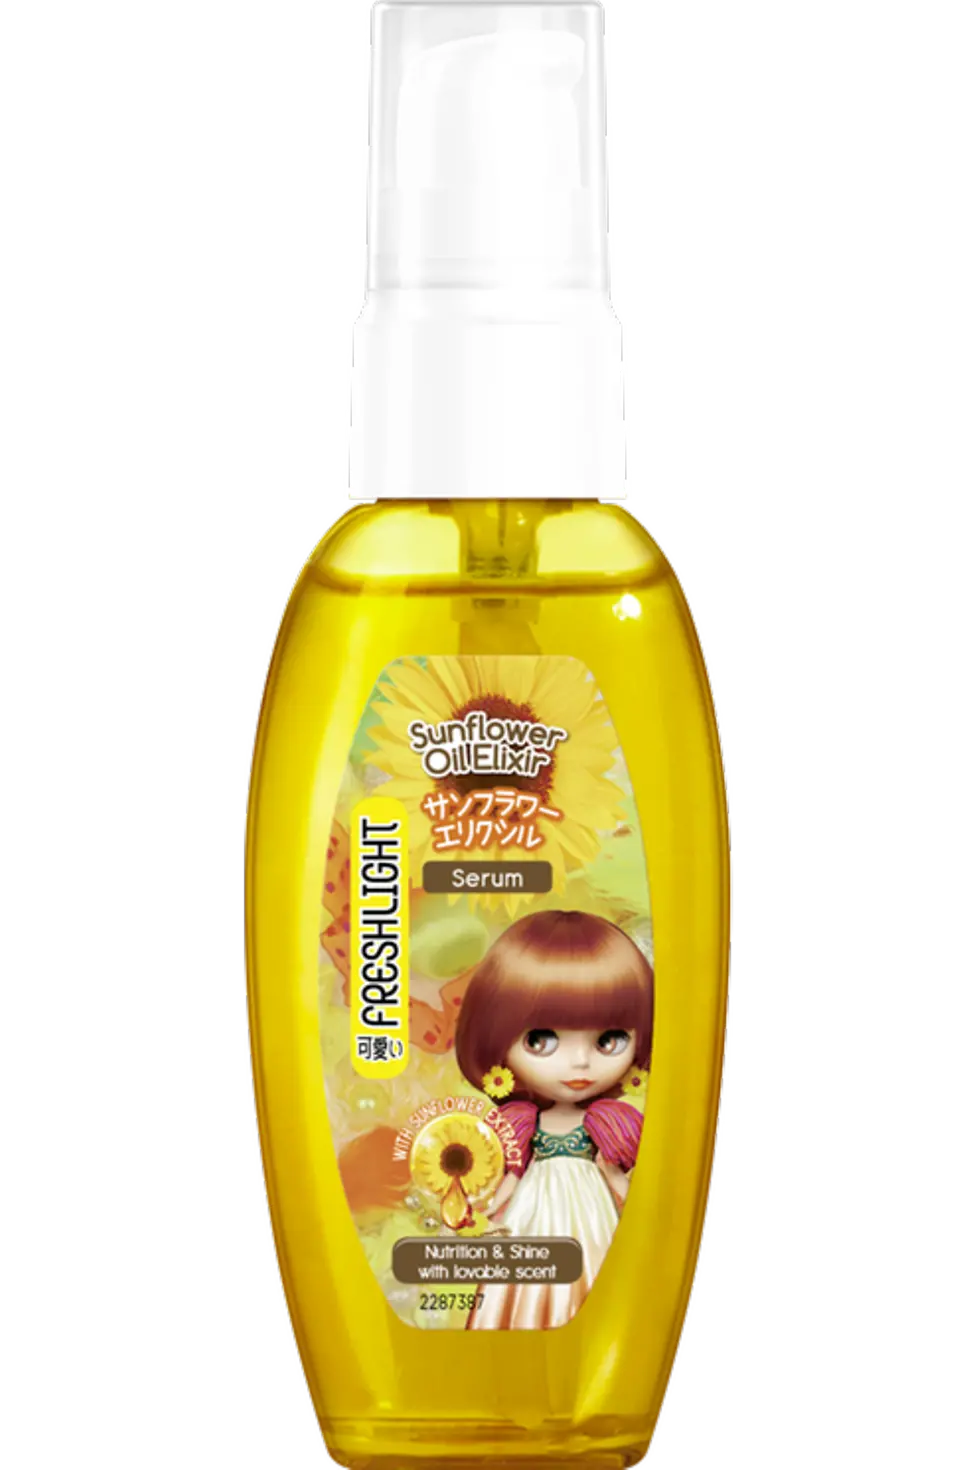 Freshlight Sunflower Oil Elixir Serum